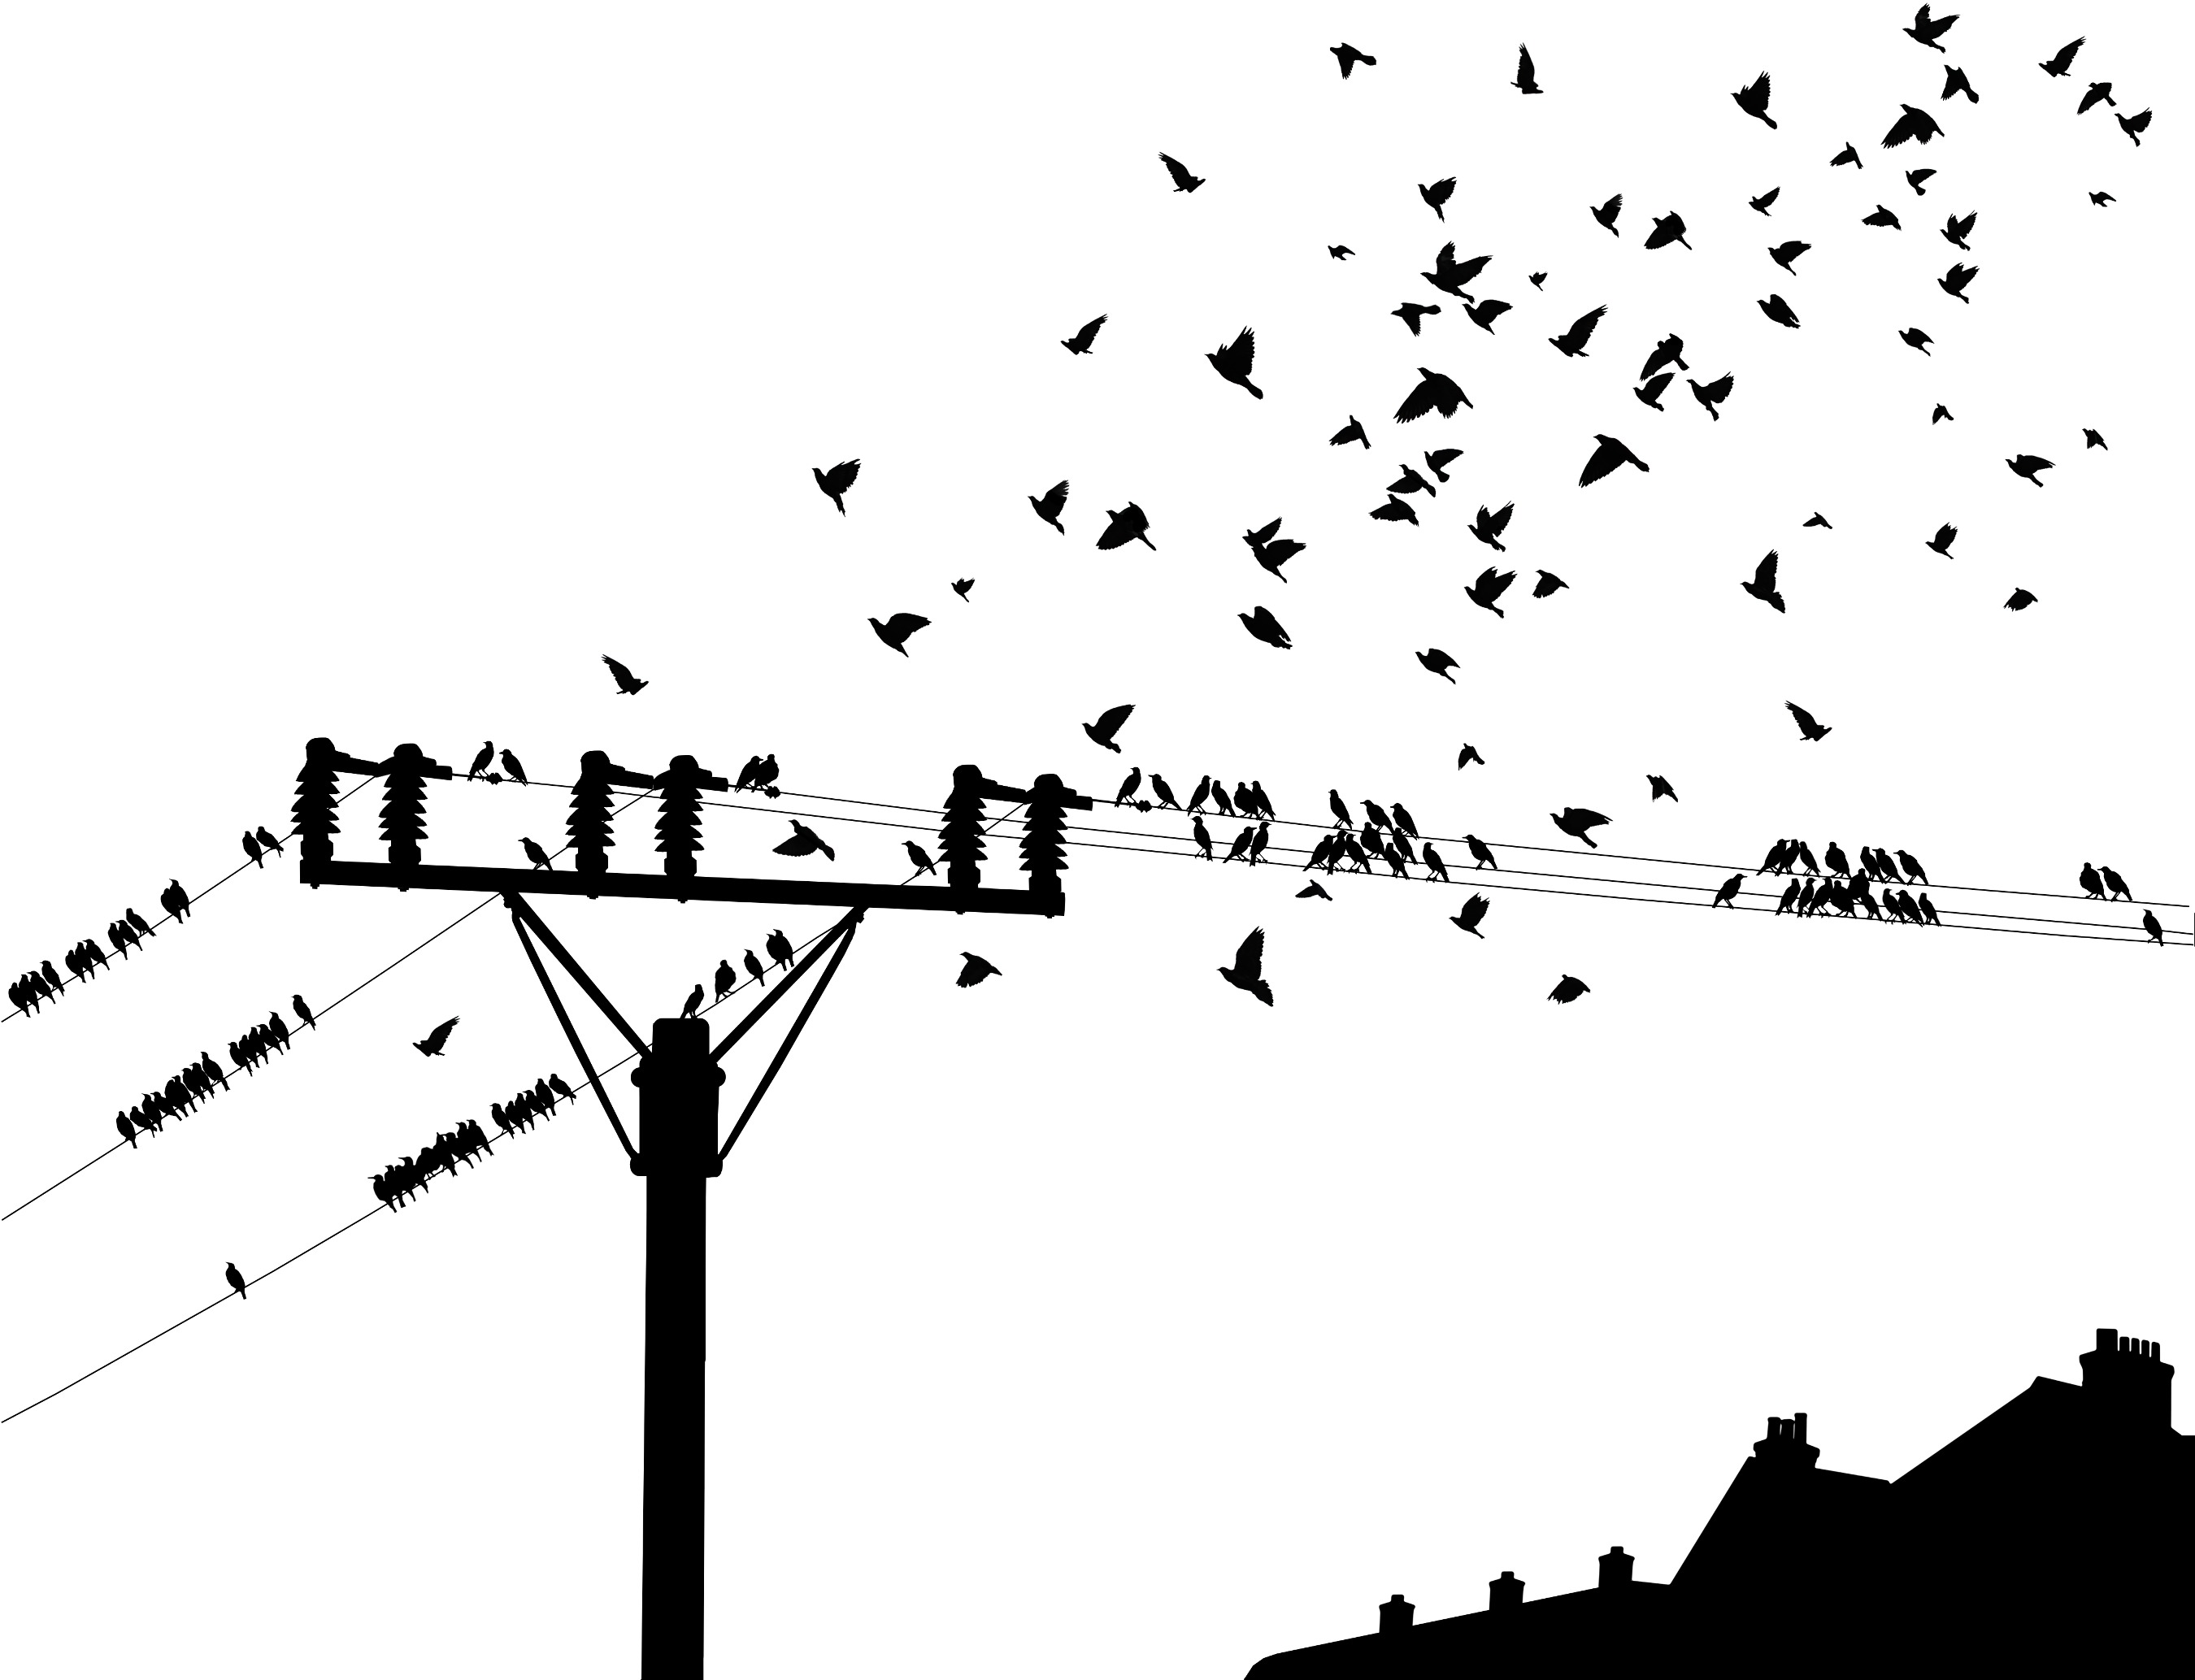 Птички на проводах